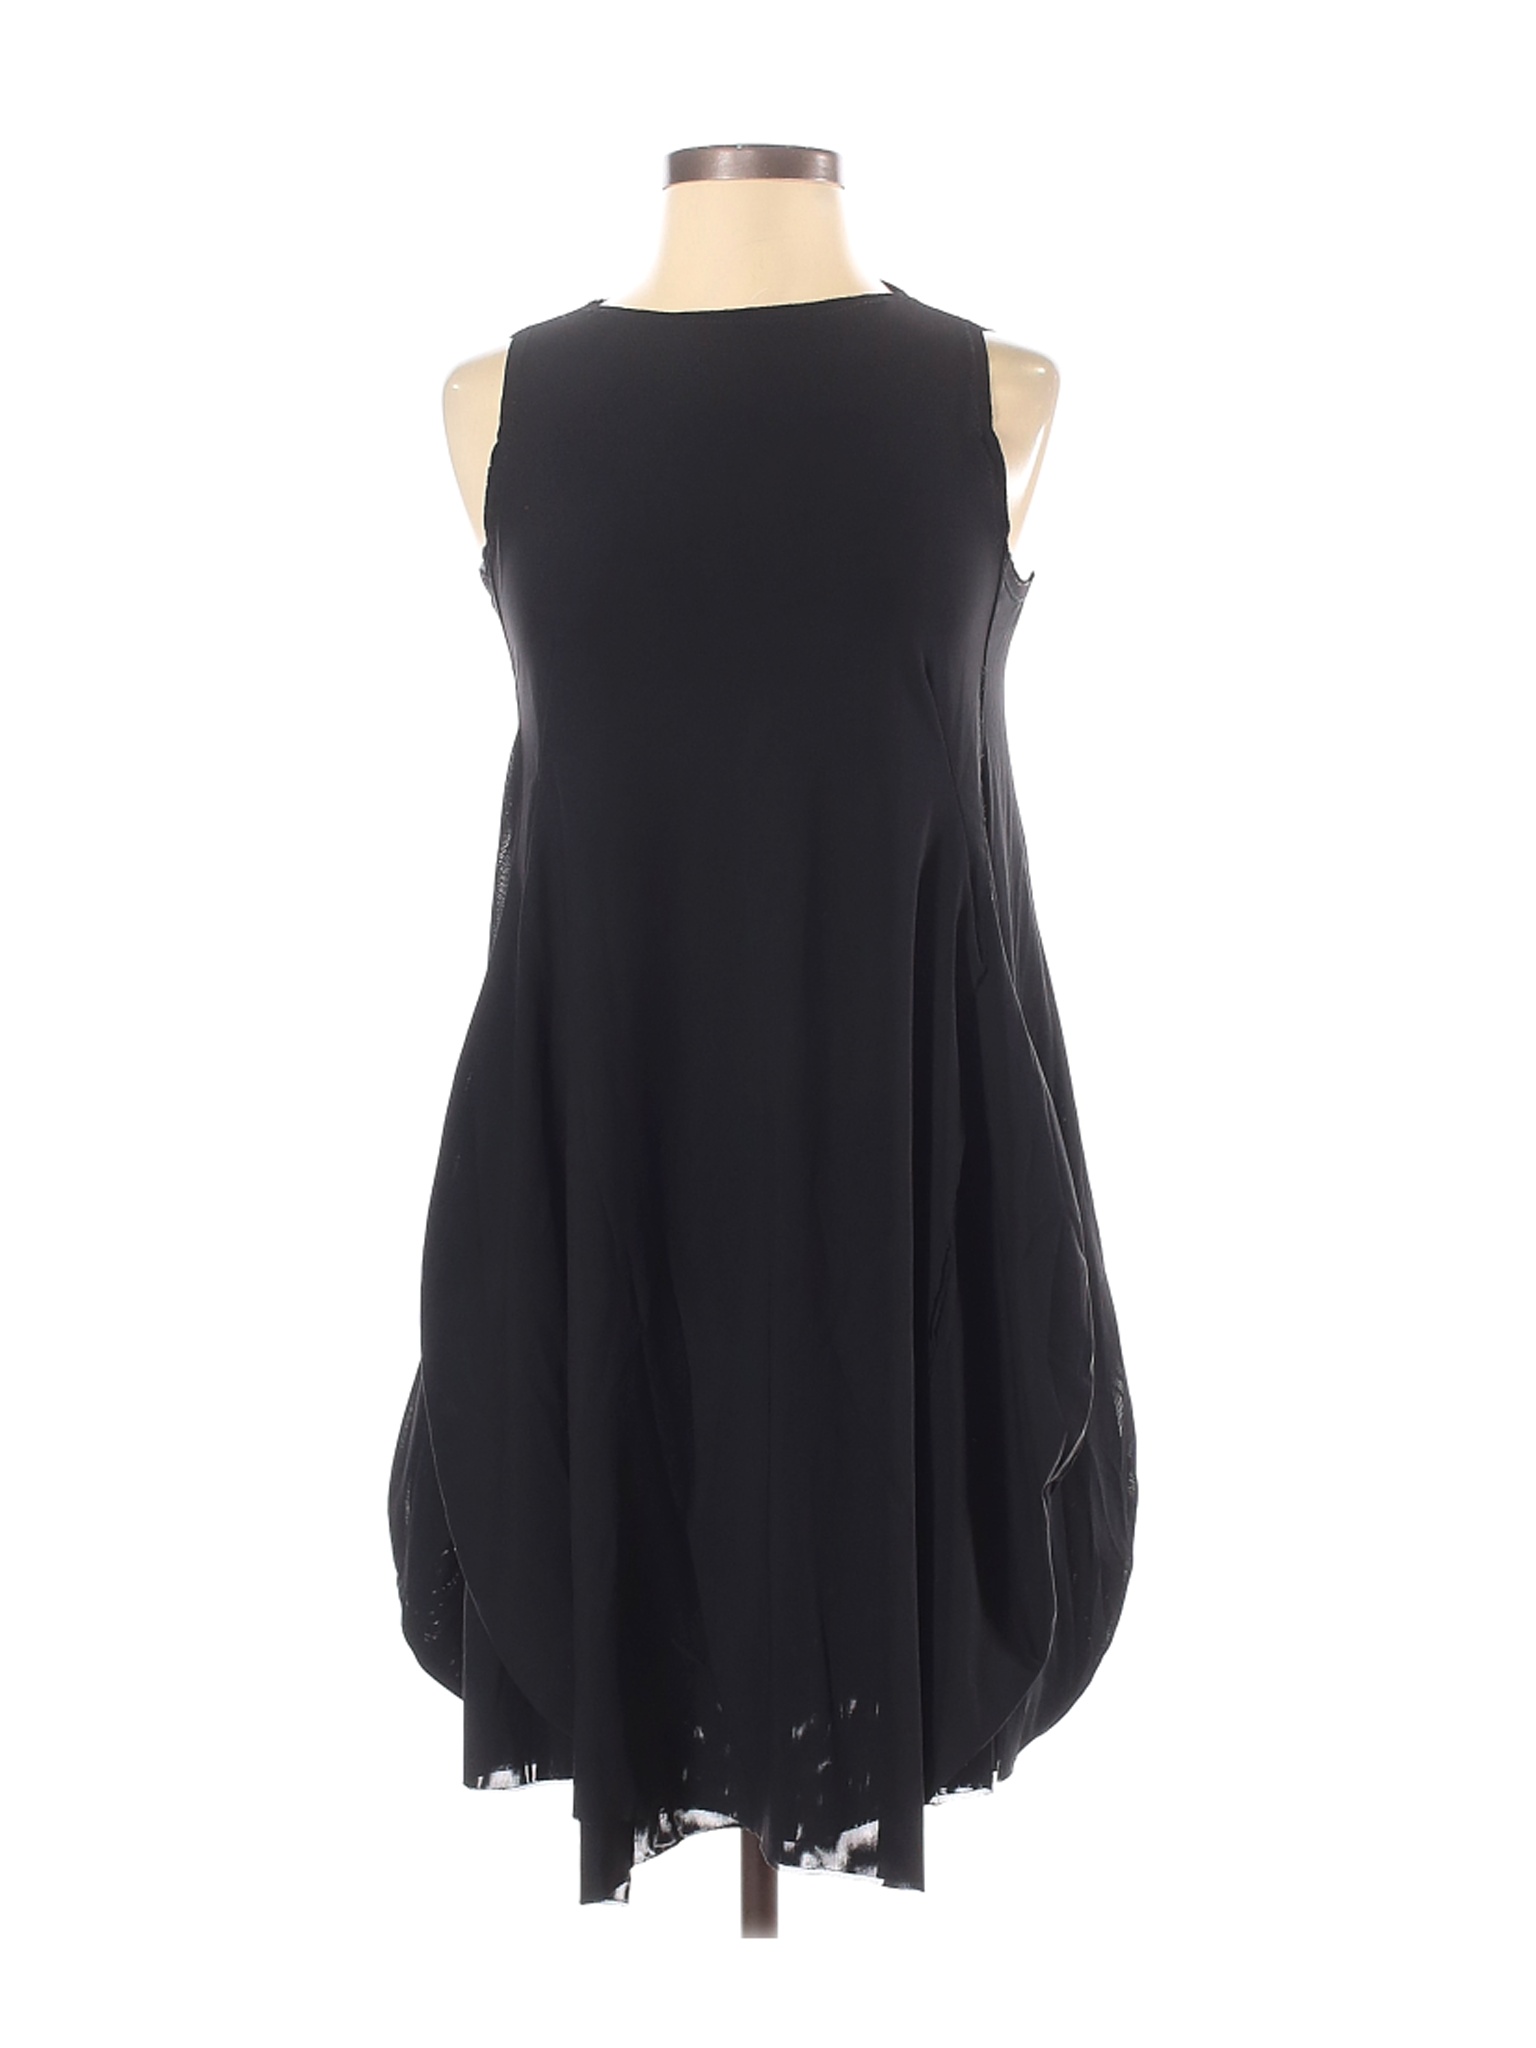 Marie Saint Pierre Women Black Casual Dress S | eBay